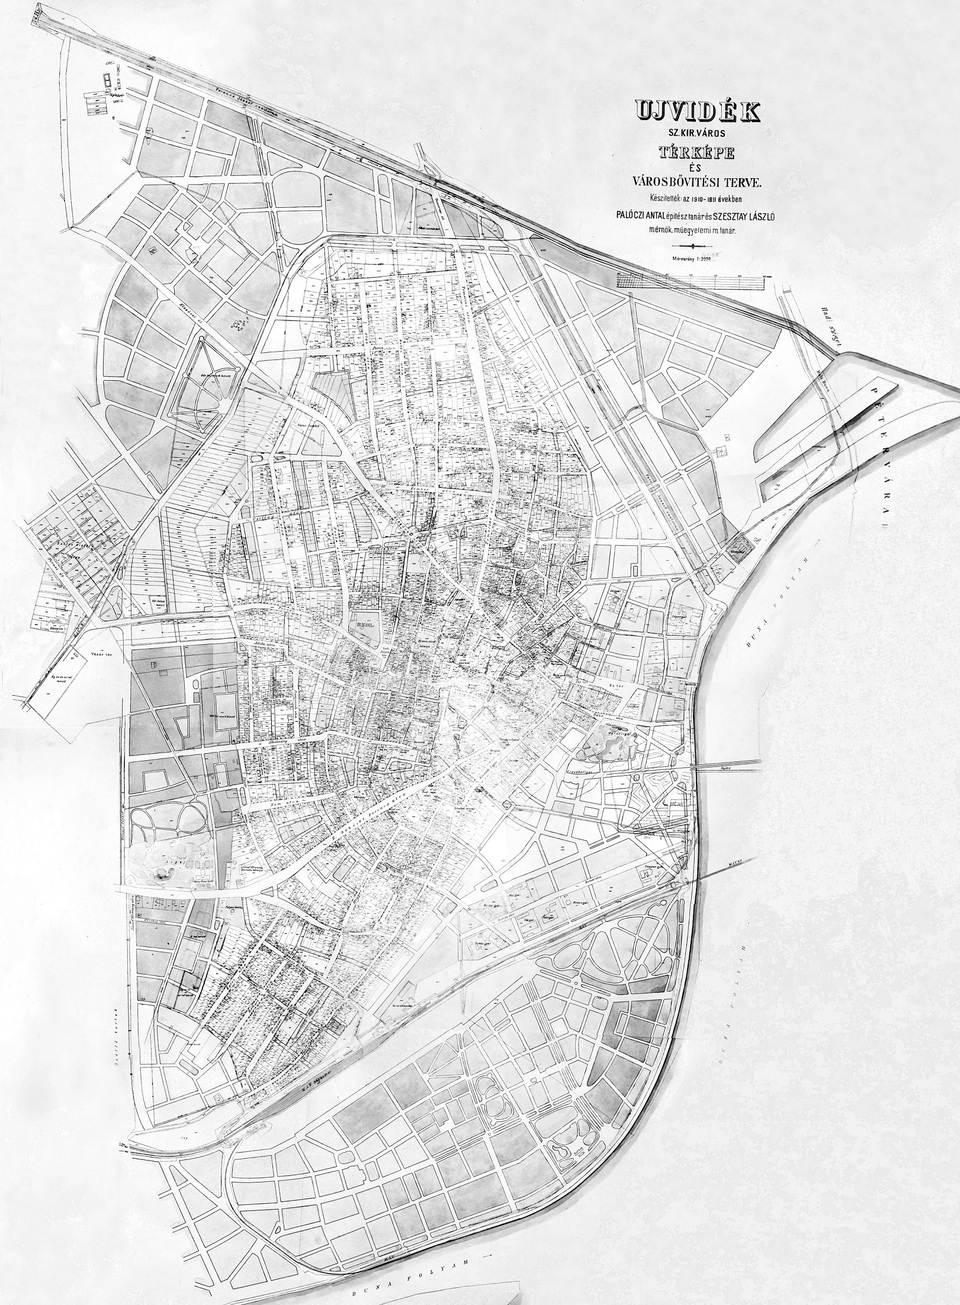 Újvidék szabályozási és városbővítési terve, készítette Palóczi Antal és Szesztay László 1910/1911-ben, Forrás: BME UT Térképtár, jelzet nélkül